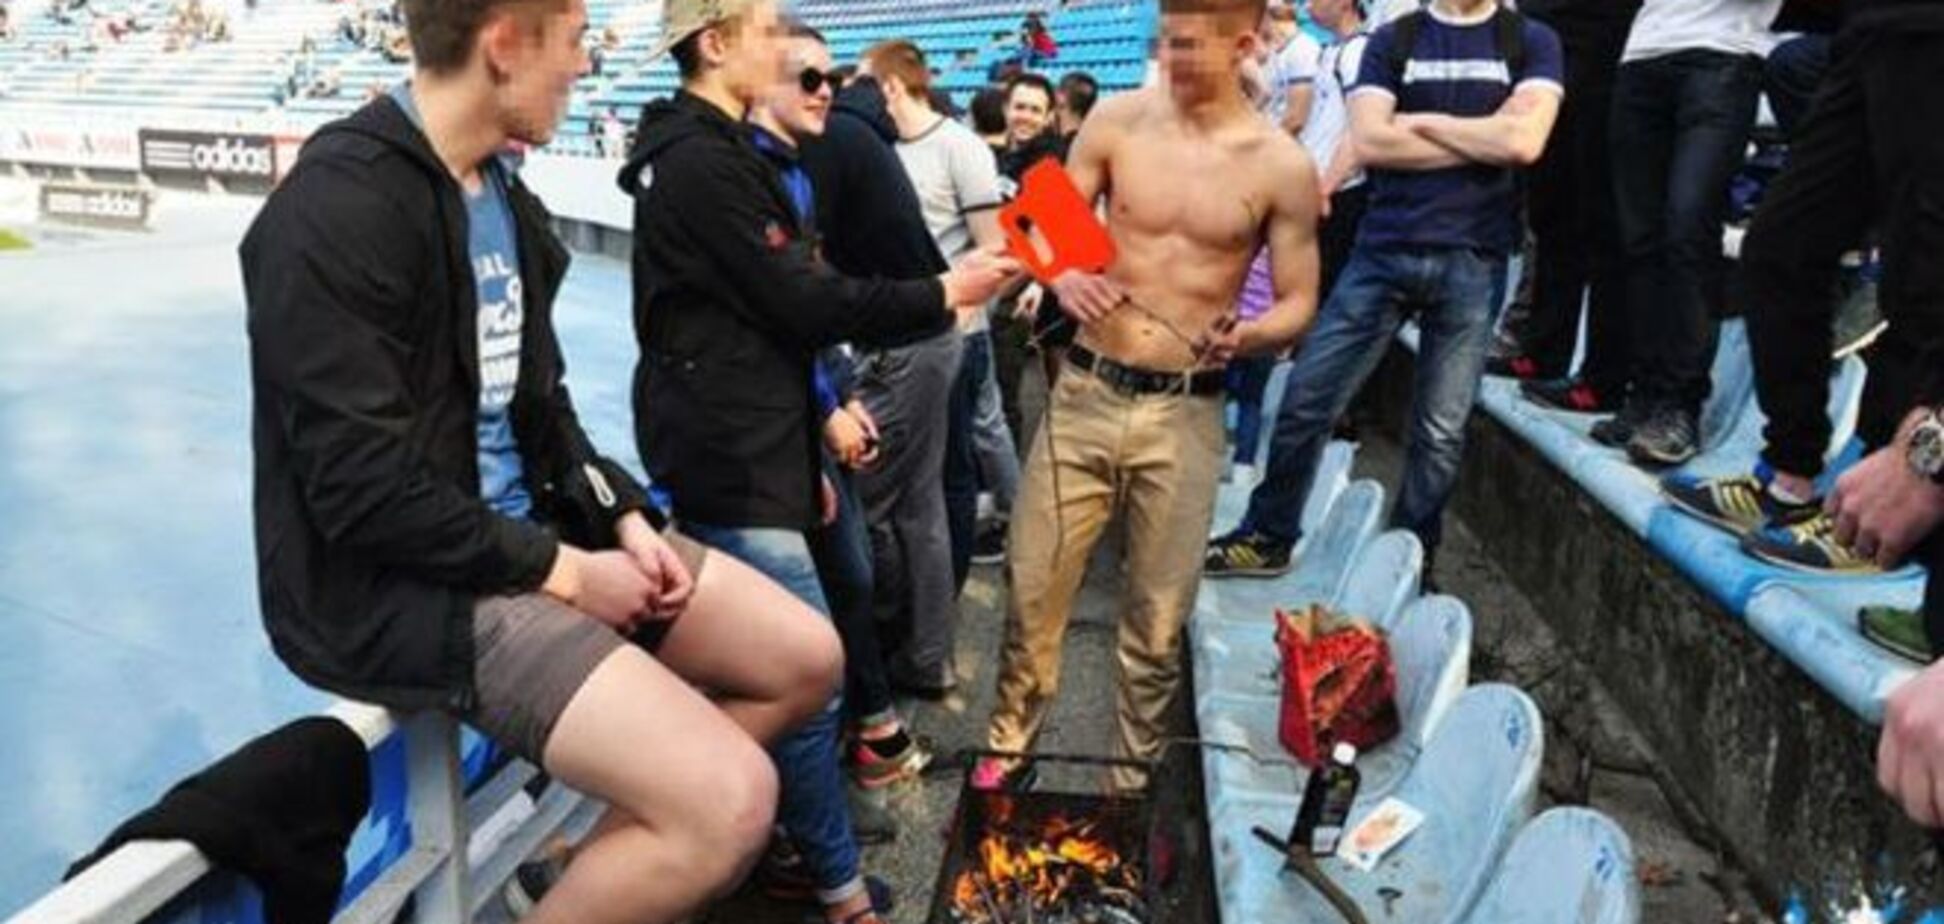 Фанаты 'Динамо' во время матча пожарили сосиски на трибунах: аппетитные фото